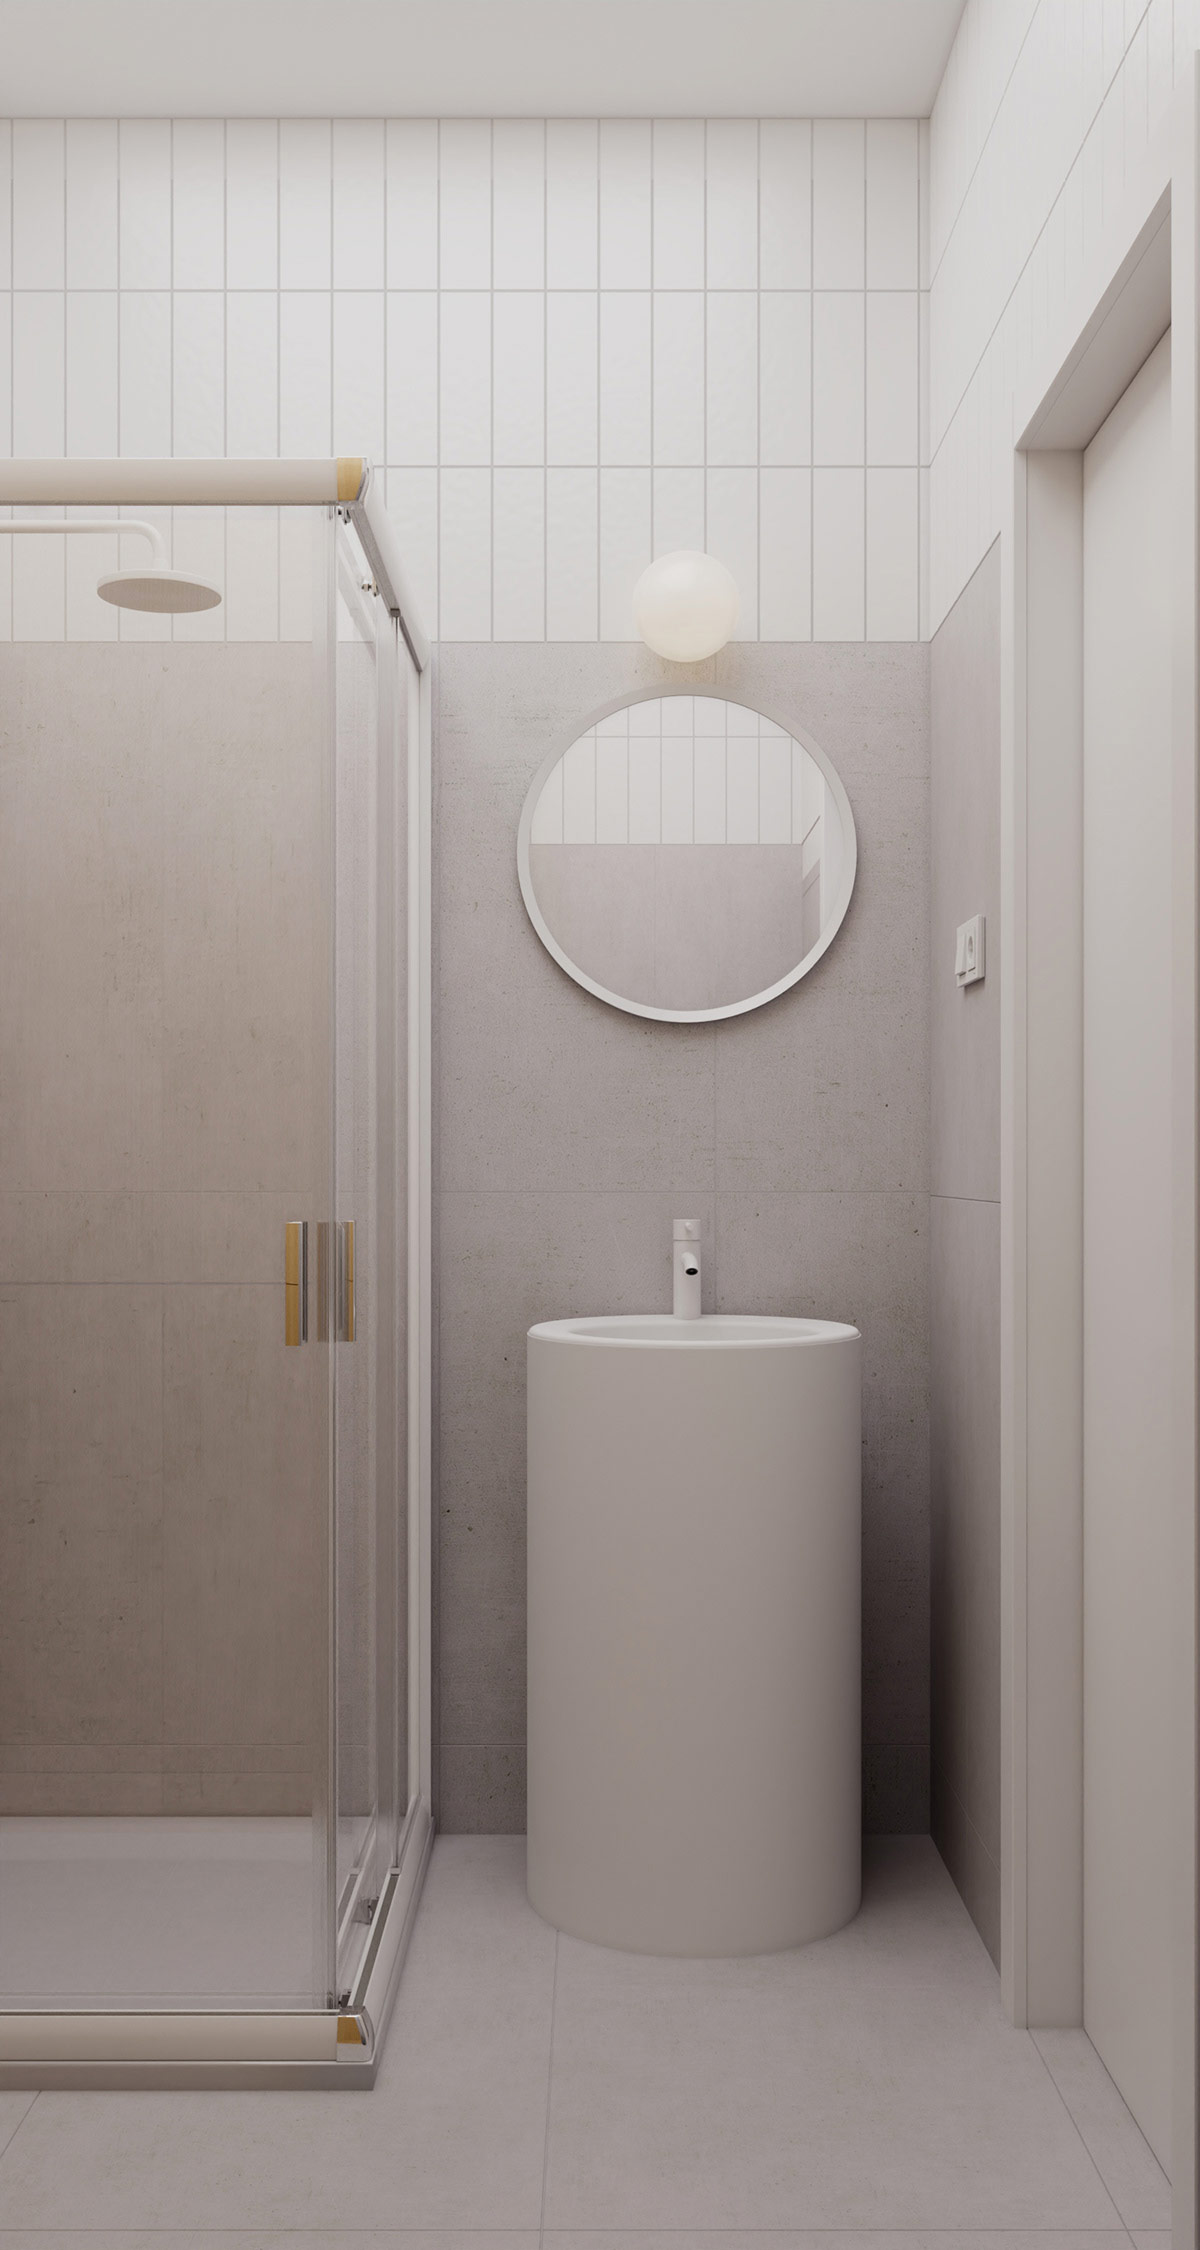 Bên trong phòng tắm, bồn rửa hình trụ và gương trang điểm tròn được kết hợp nhịp nhàng bởi đường kính giống hệt nhau của chúng.